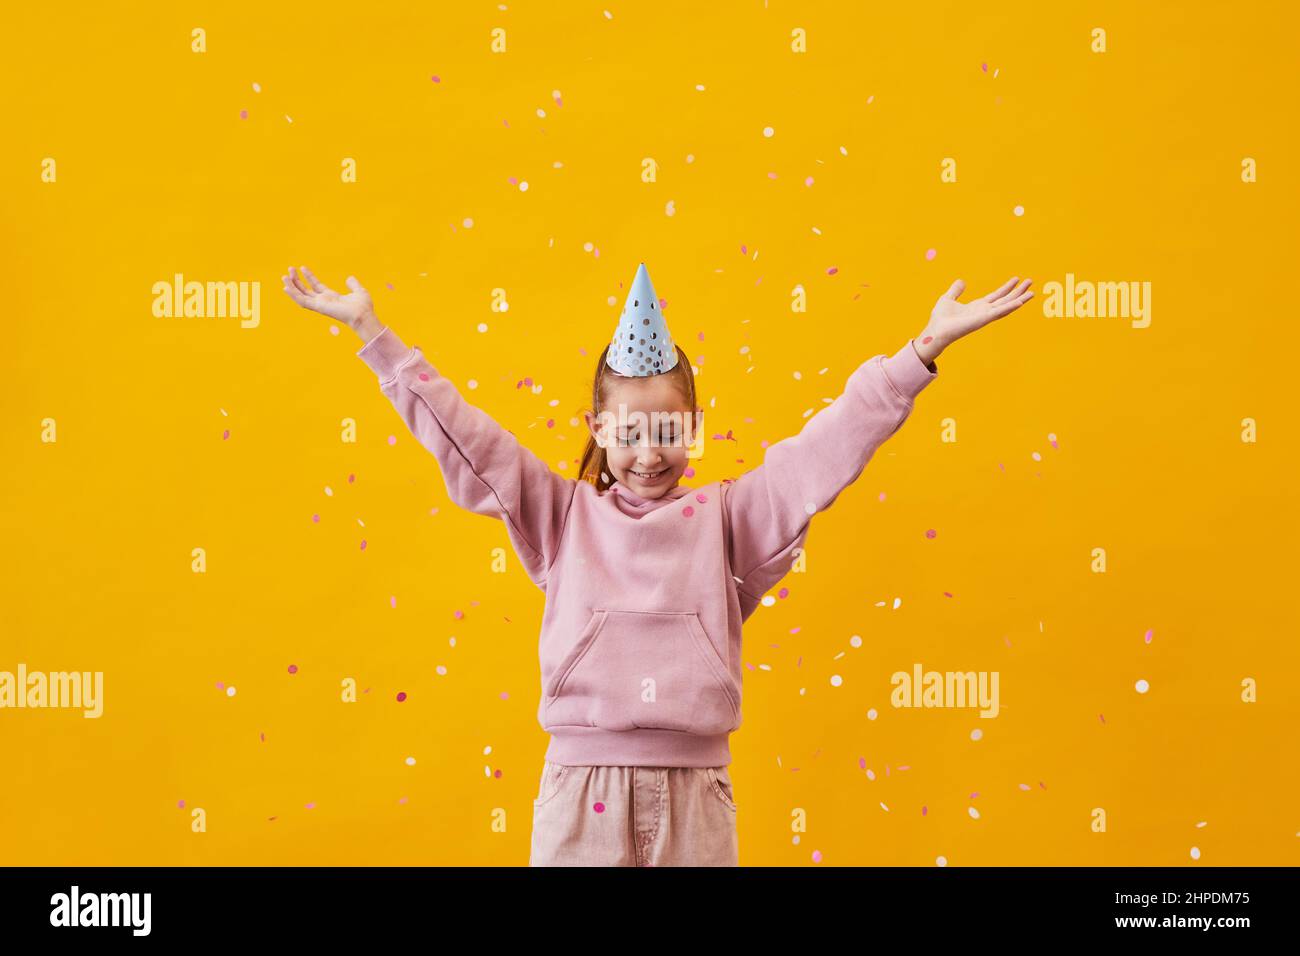 Portrait pop de la jeune fille adolescente dansant dans des confetti sur fond jaune vif, espace de copie Banque D'Images